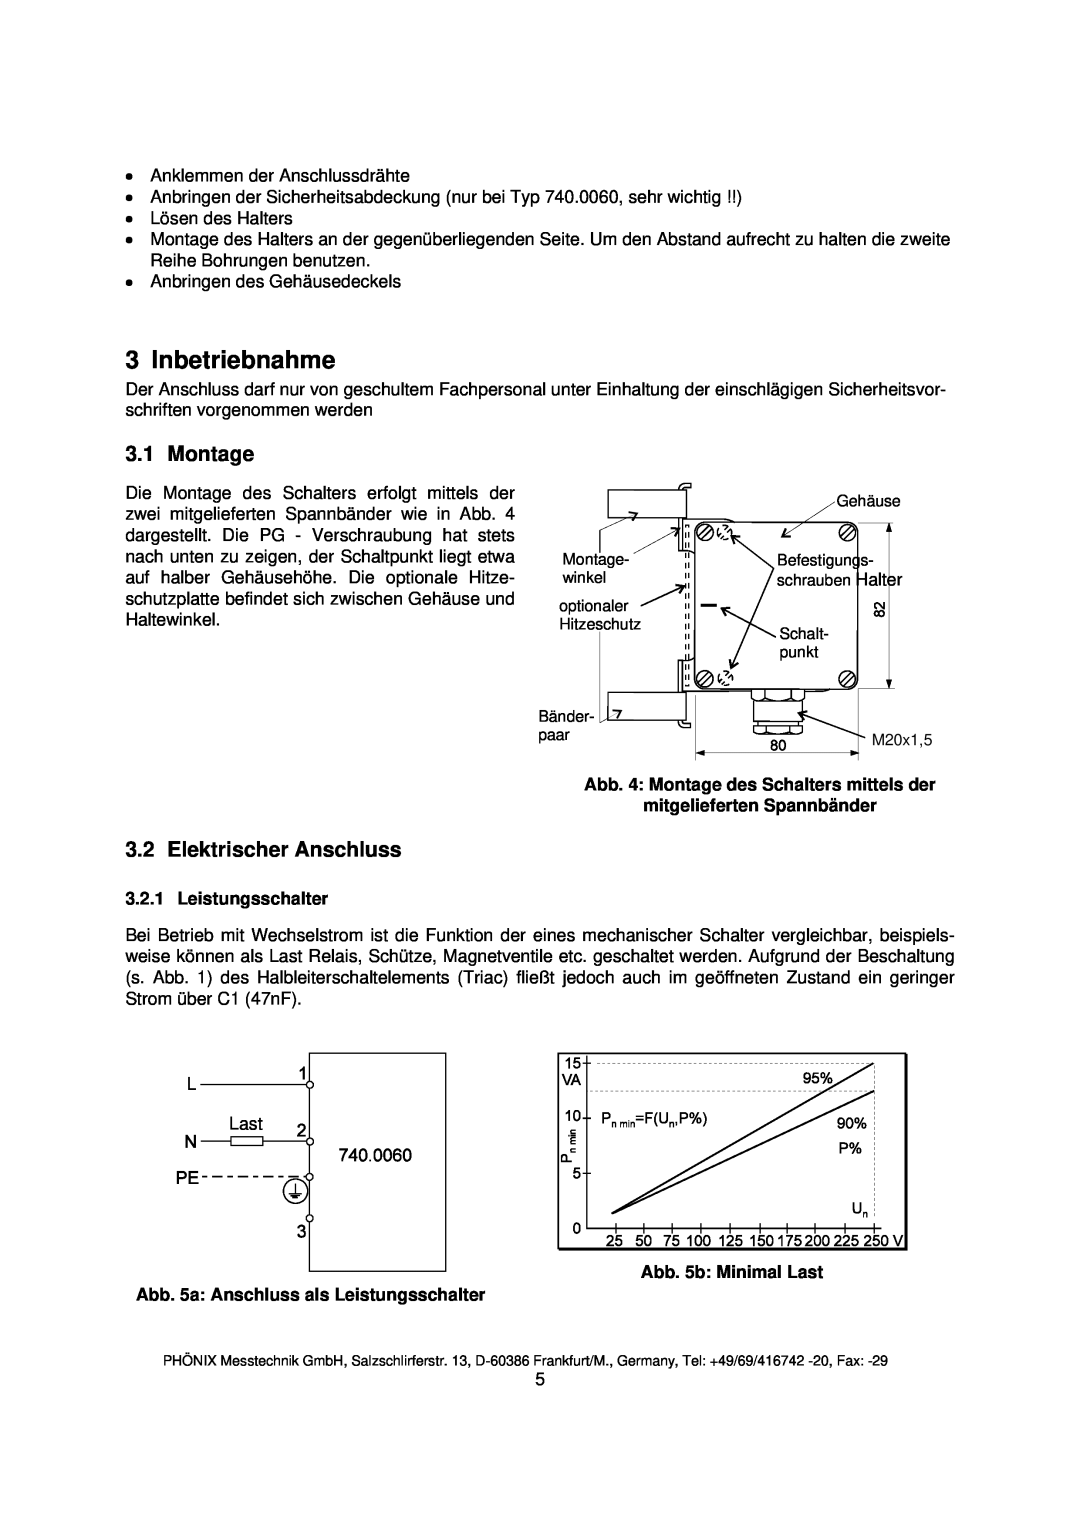 Euphonix 740.0065NA instruction manual Inbetriebnahme, Montage, Elektrischer Anschluss, Leistungsschalter 